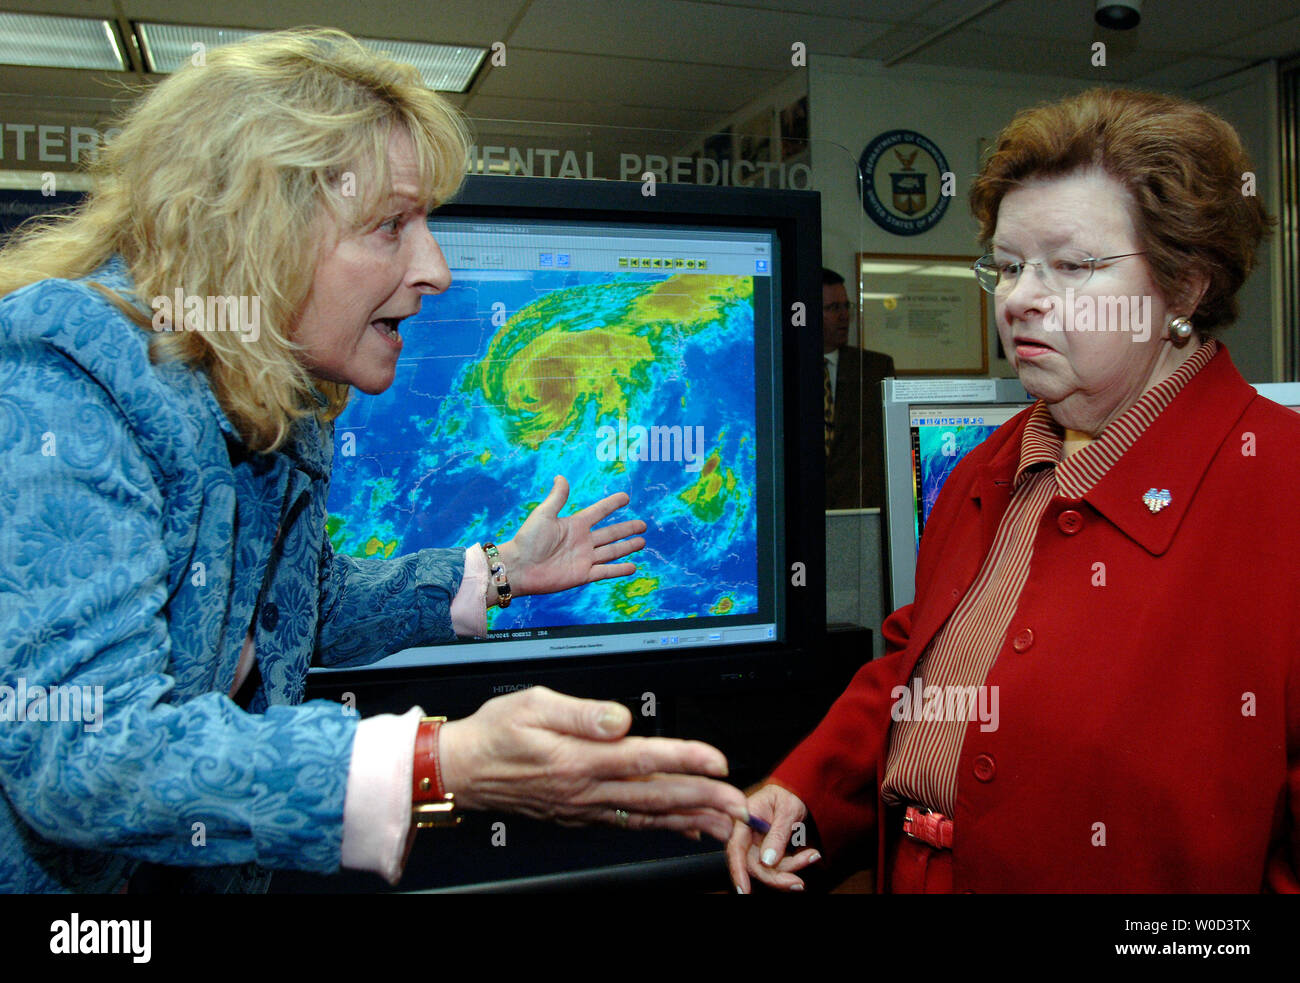 Le sénateur Barbara Mikulski (D-MD) (R) est à l'écoute de la directrice de l'Environmental Modelling Centre Naomi parler d'interventions chirurgicales de la prochaine saison des ouragans de 2006, au National Oceanic and Atmospheric Administration (NOAA) Commande centrale de Camp Springs, MD Le 5 juin 2006. Mikulski ont visité l'établissement et a parlé de la prochaine saison de météorologue dans lequel est la prédiction de la NOAA 13 à 16 tempêtes nommées, où huit à 10 devenir des ouragans, dont quatre à six pourraient devenir des ouragans majeurs de catégorie 3 ou supérieure (UPI Photo/Kevin Dietsch) Banque D'Images